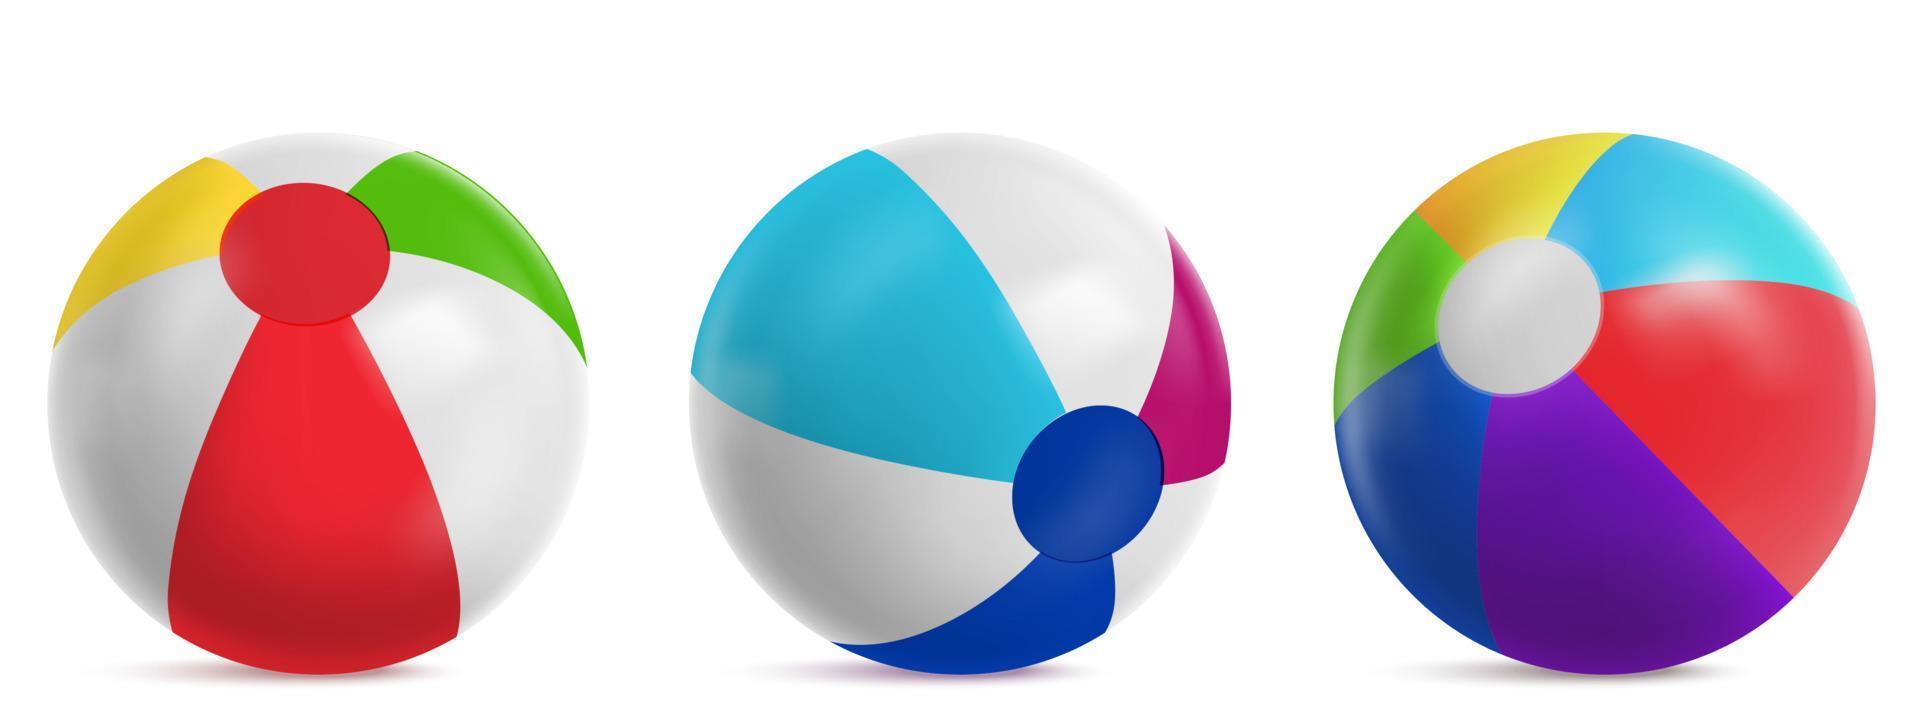 pelotas de playa inflables para jugar en el agua vector